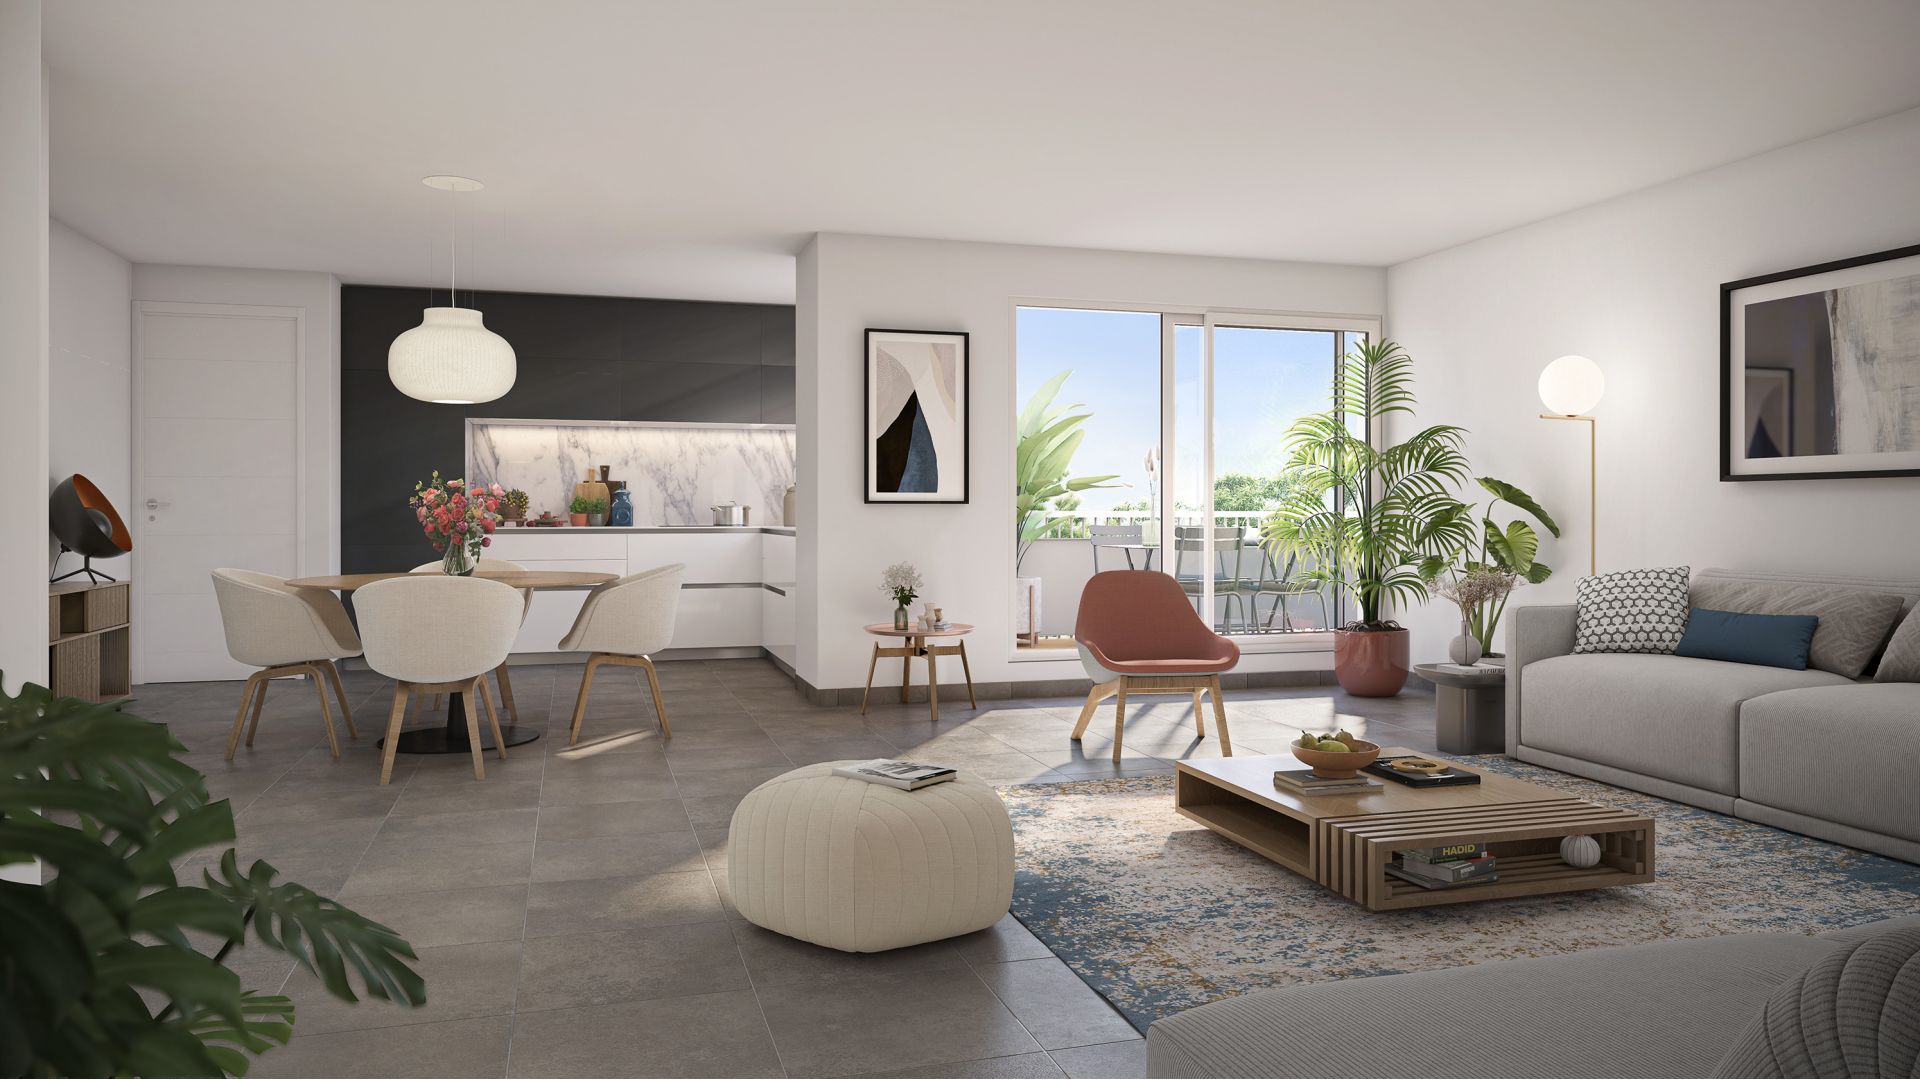 Greencity immobilier - achat appartements neufs du T2 au T5 - Résidence Villa Harmonie - 31200 Toulouse - vue intérieure